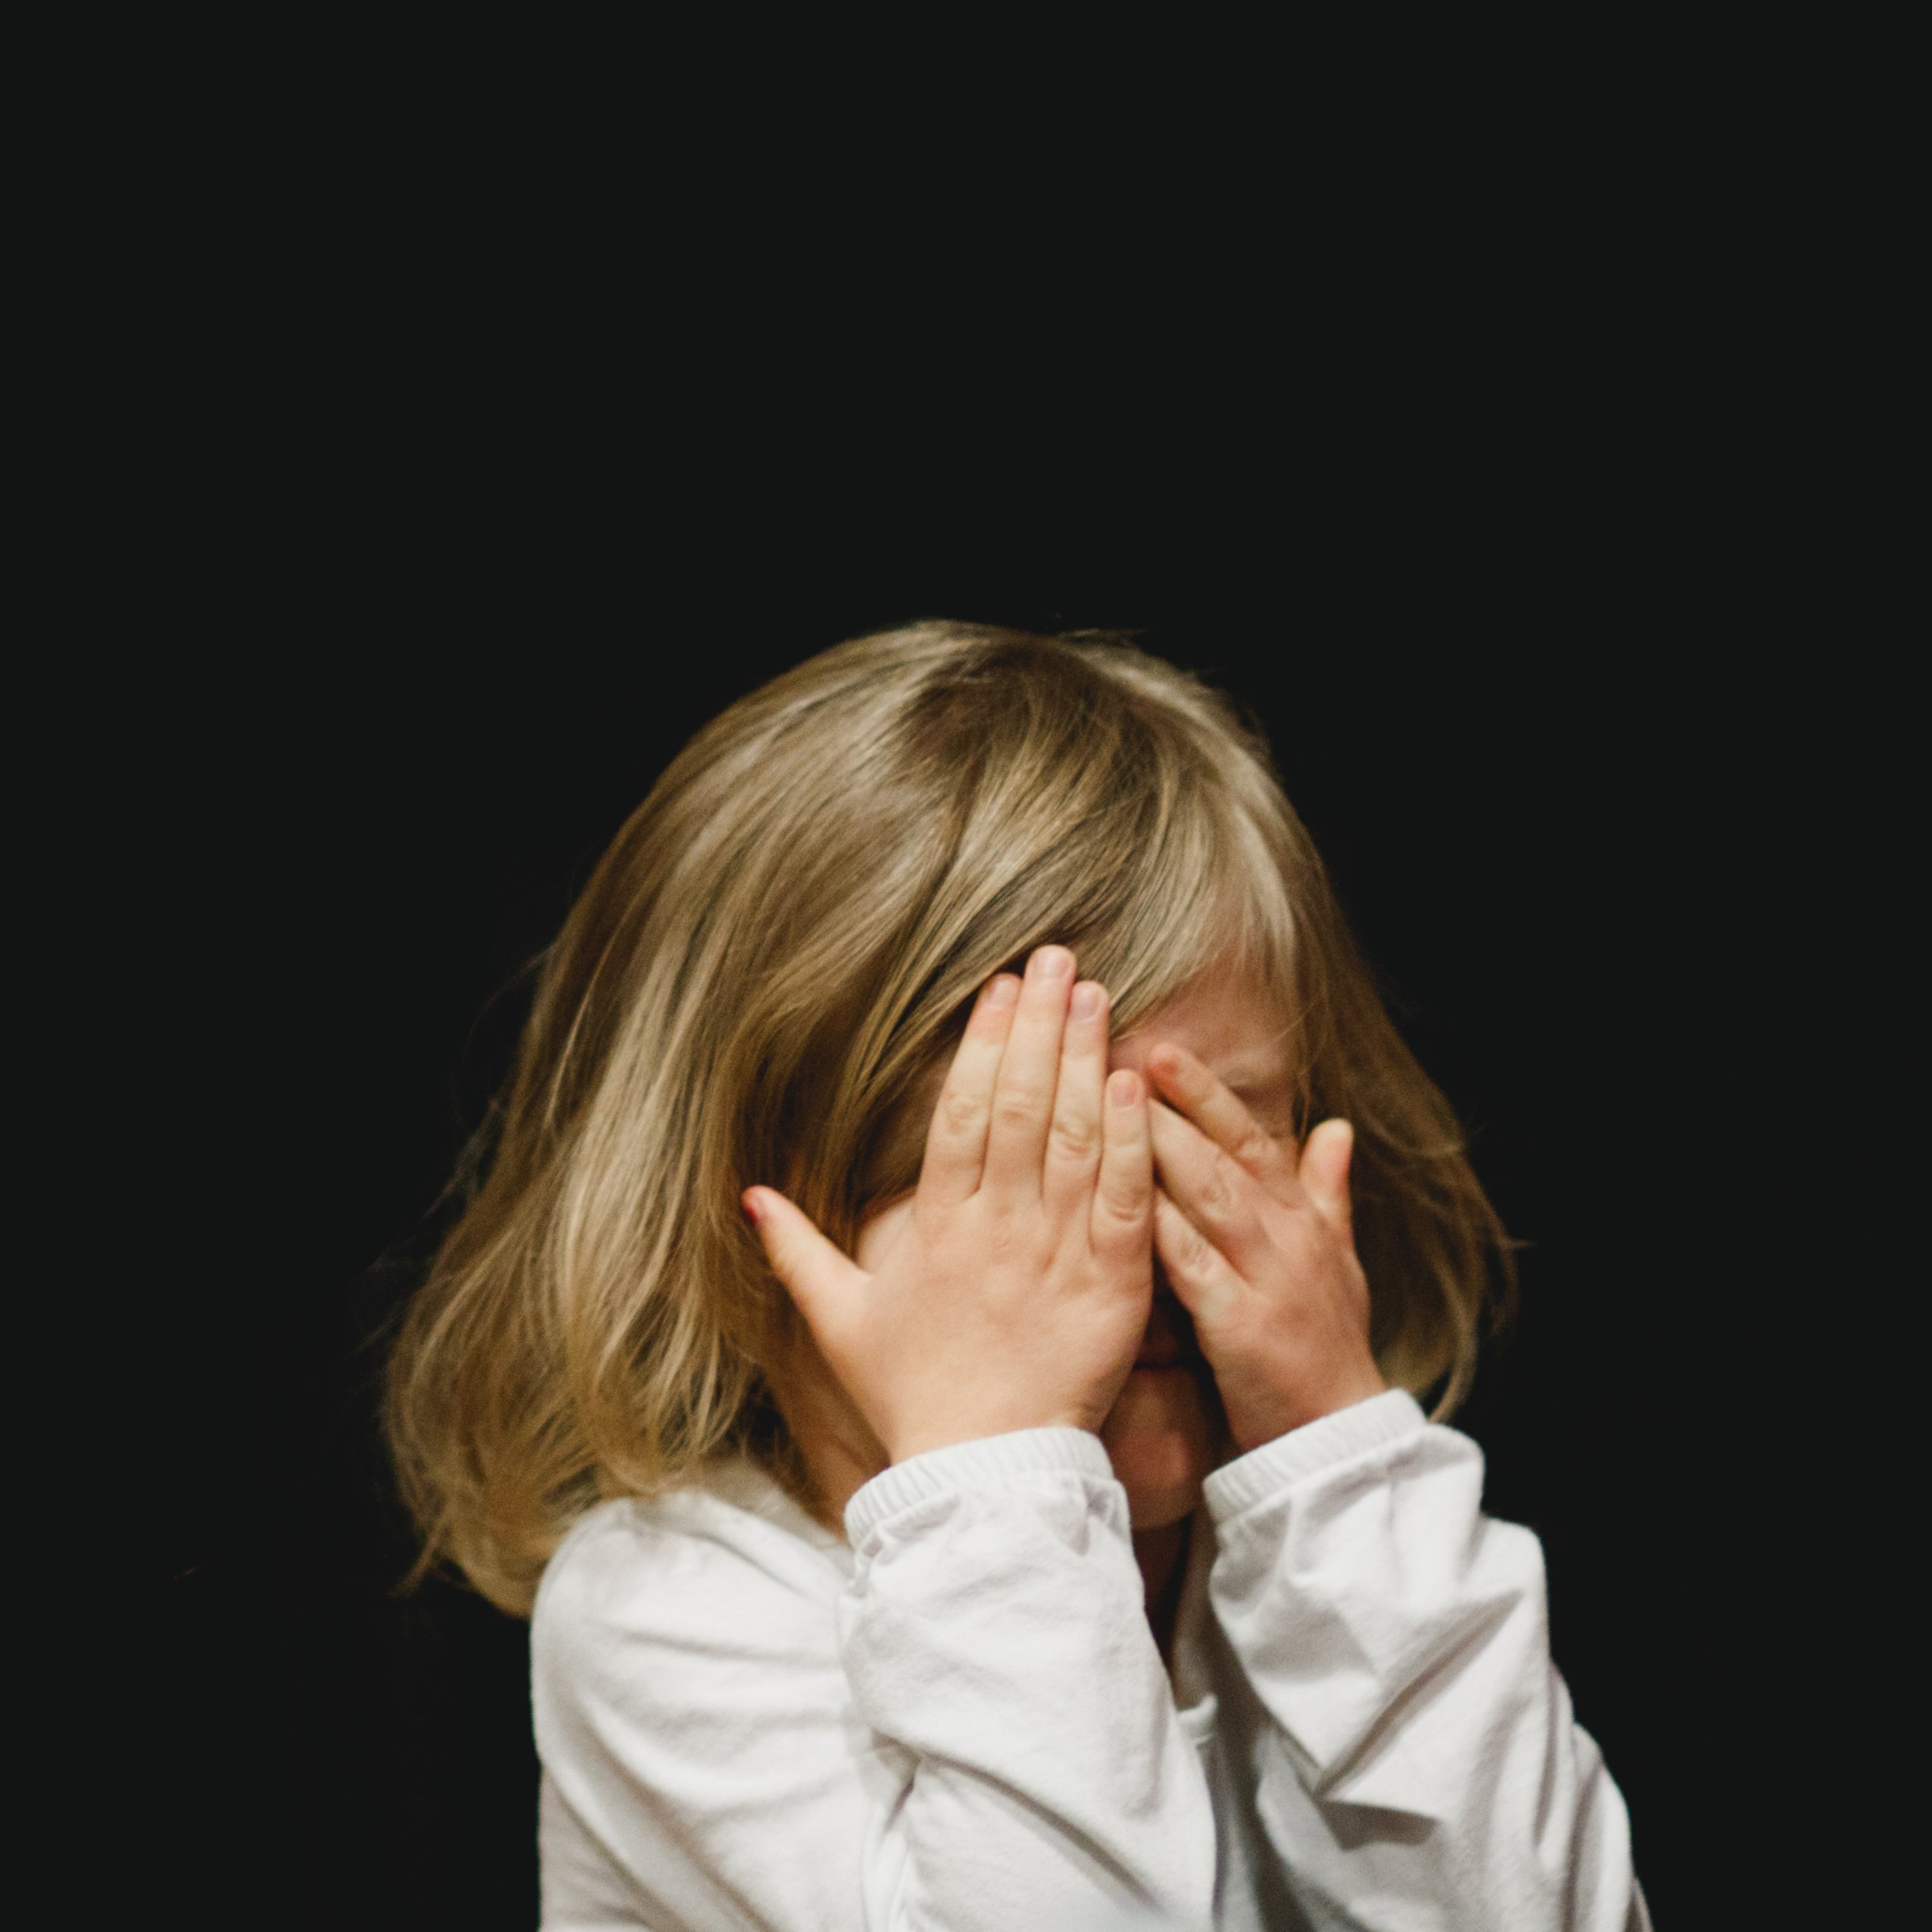 És veritat que els nens amb TDAH tenen menys empatia?